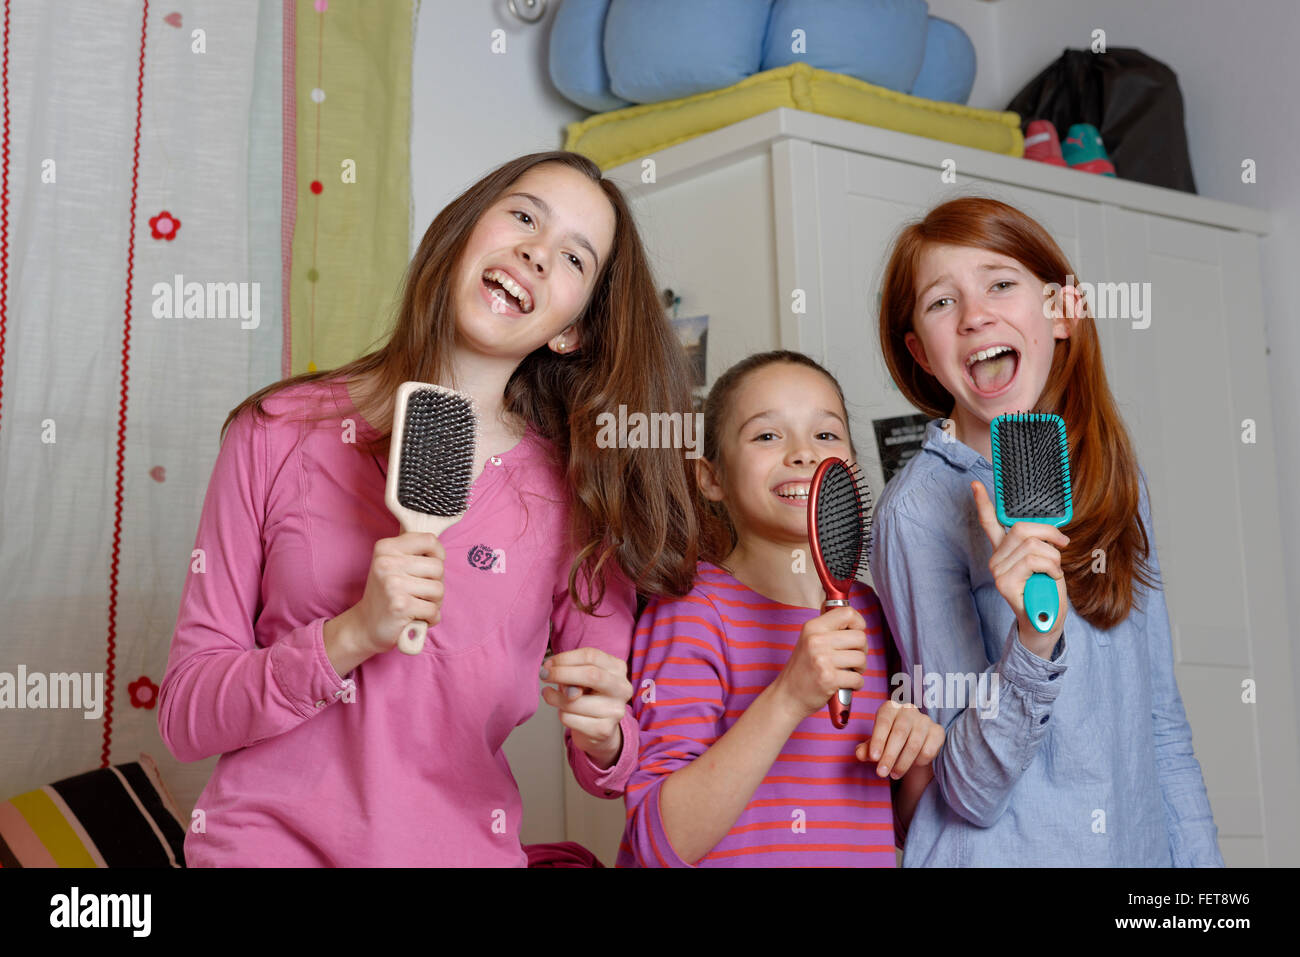 Las niñas, los niños cantando en cepillo como micrófono, Alemania Foto de stock